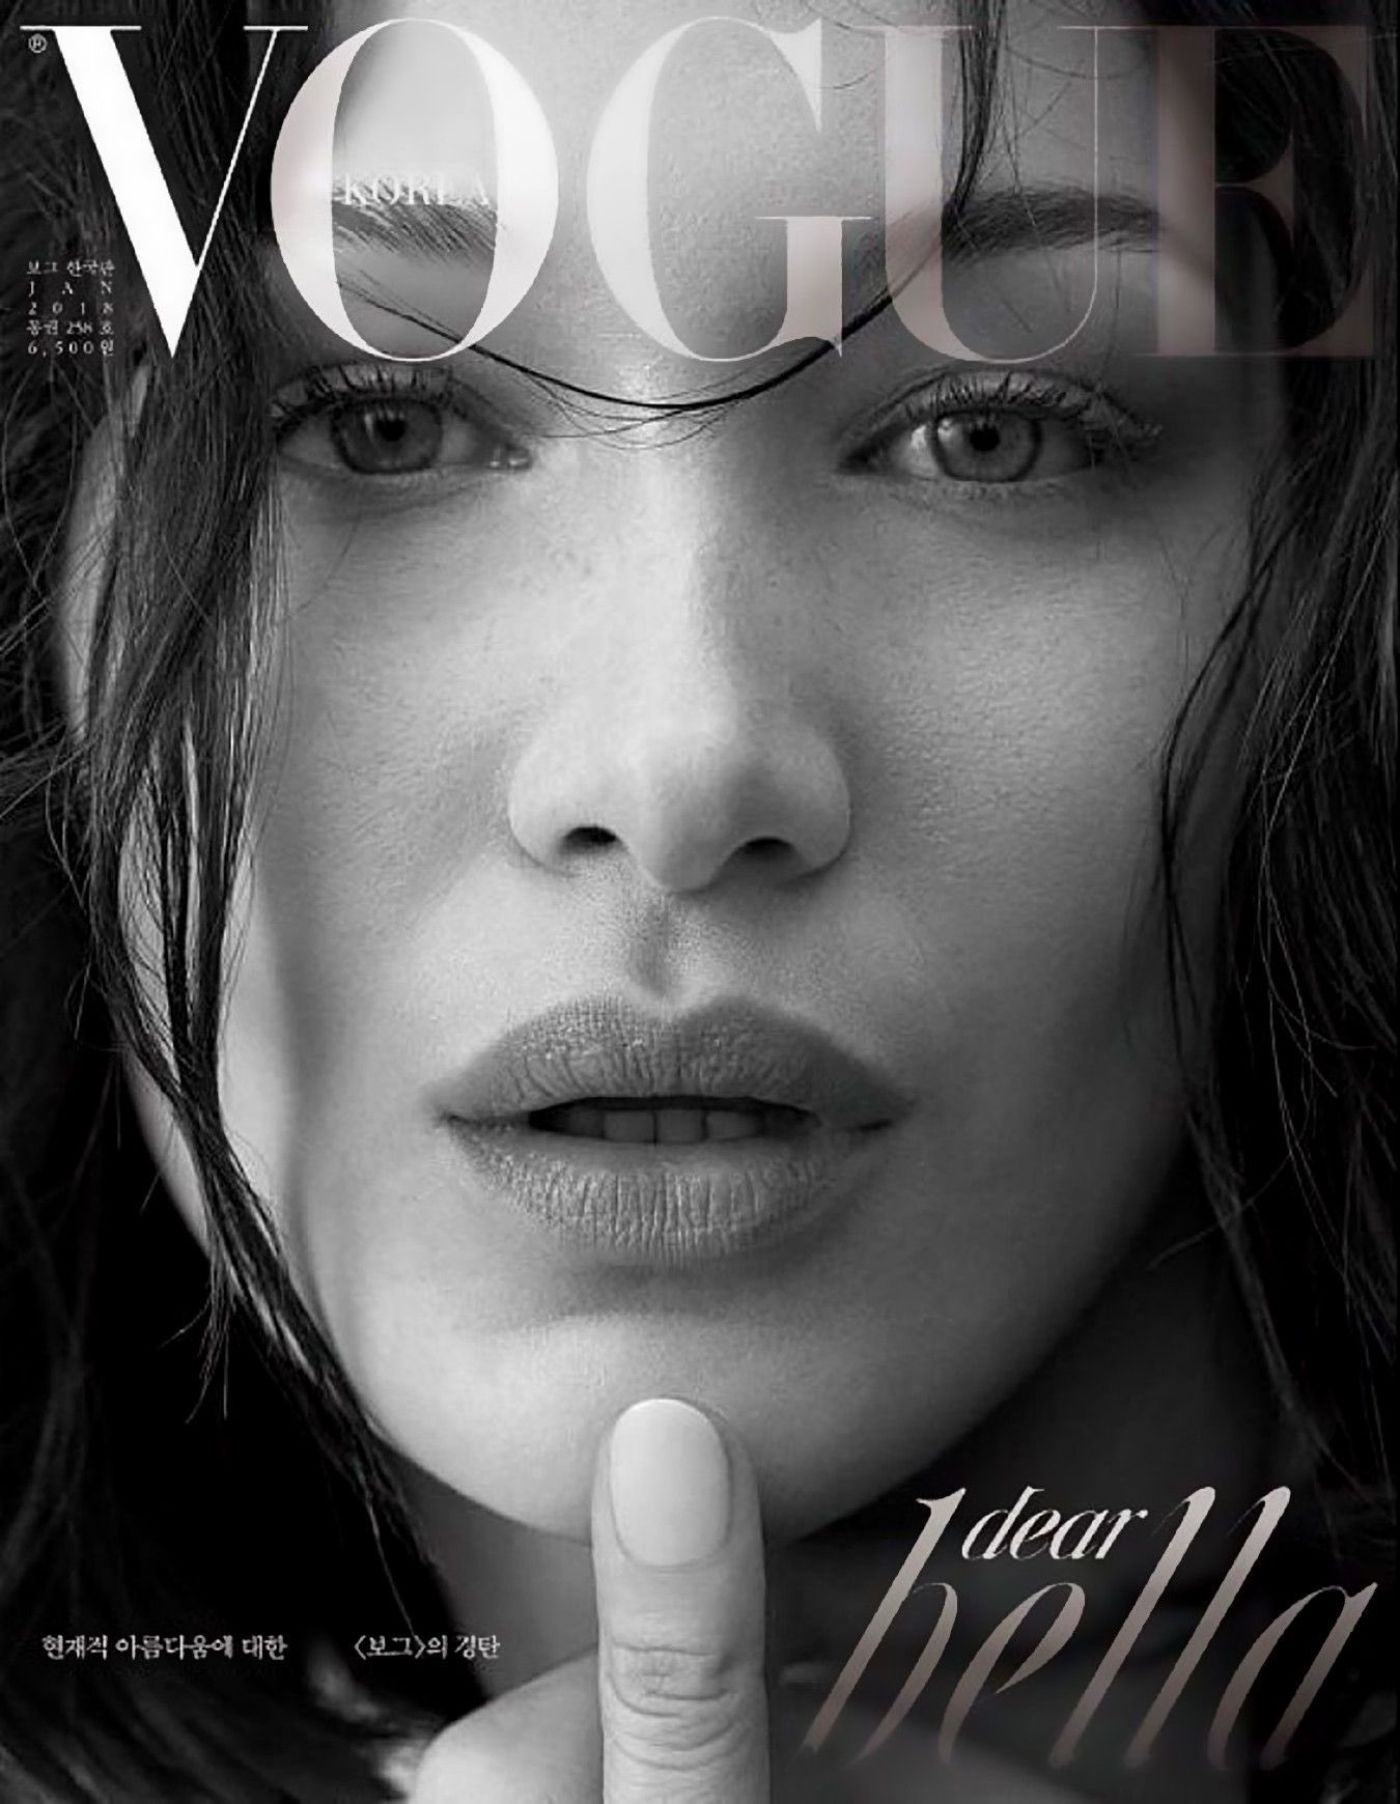 Vogue Korea March 2020 Covers (Vogue Korea)